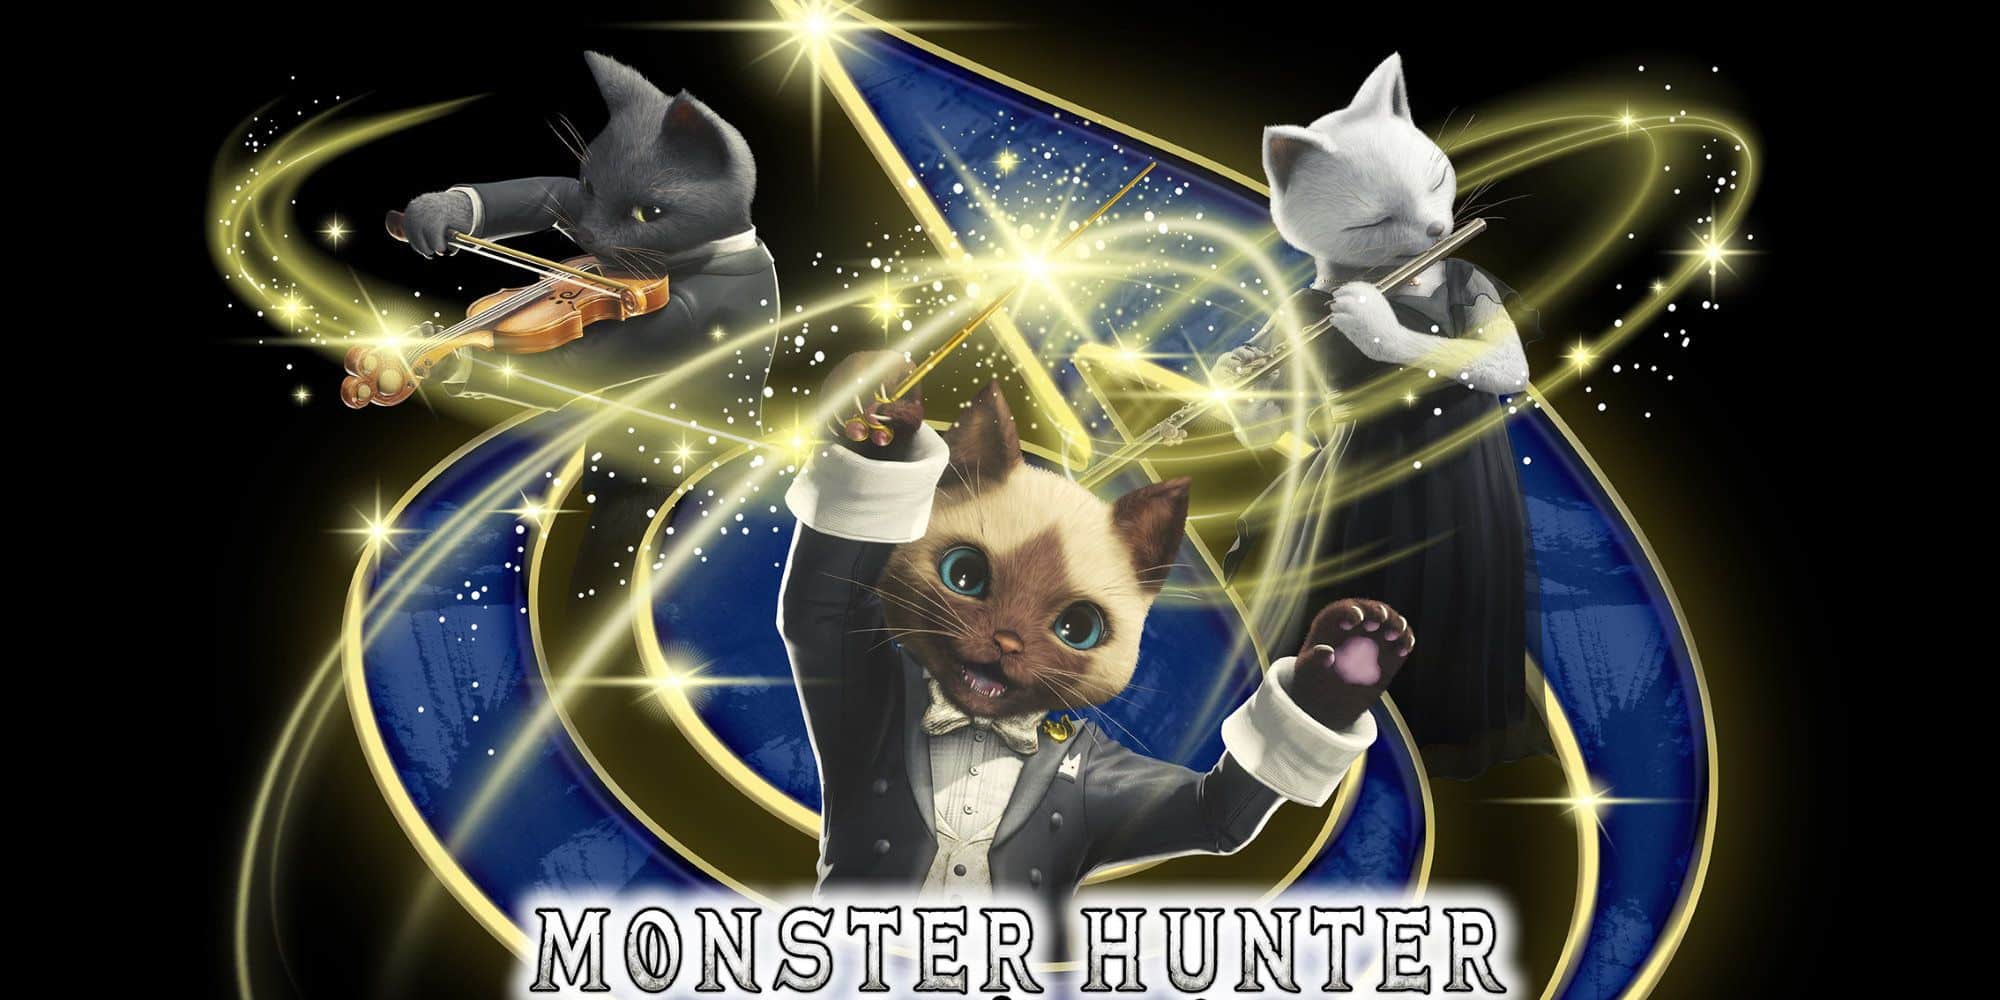 Monster Hunter Orchestra Concert